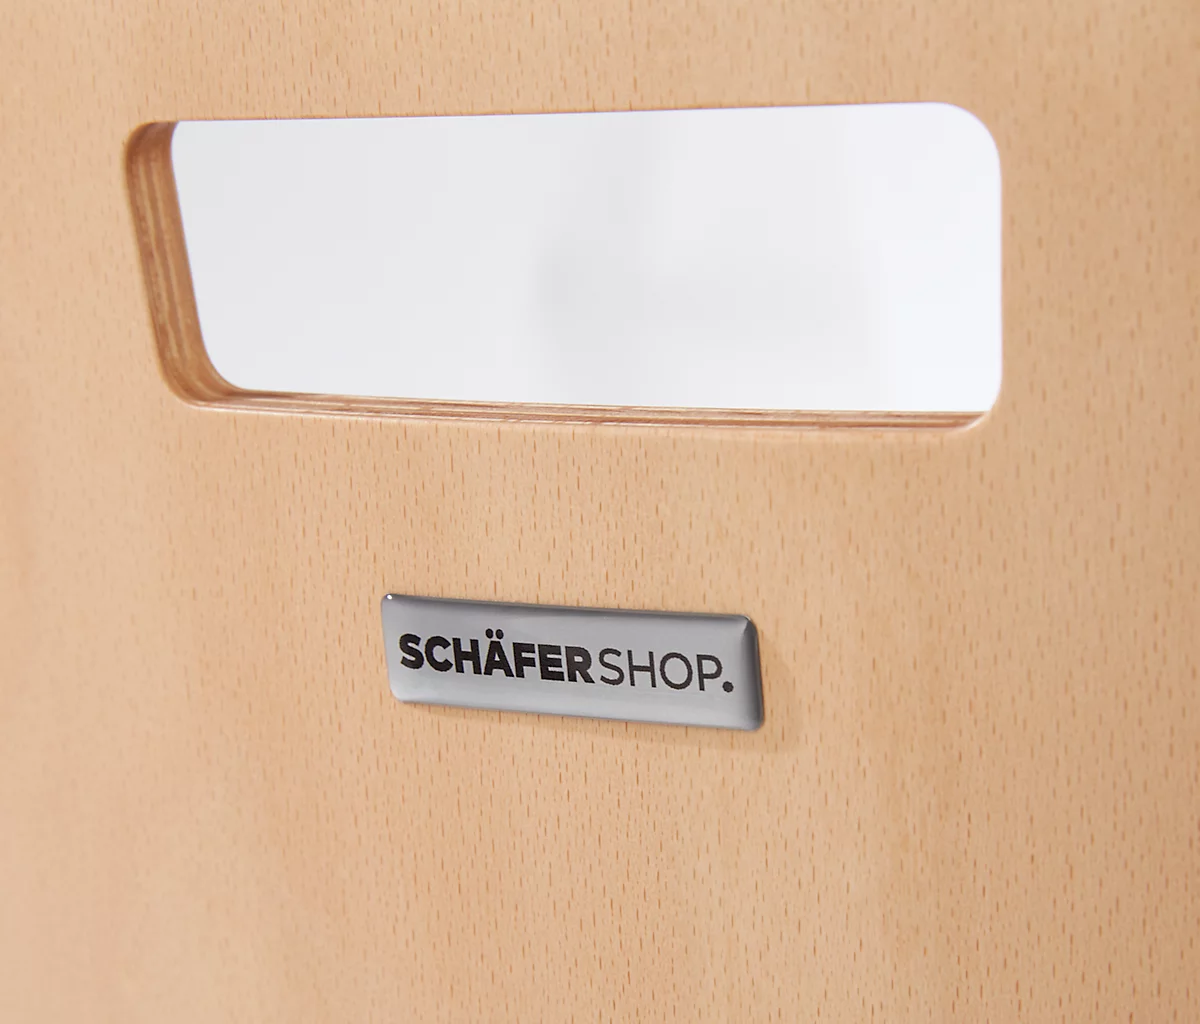 Schäfer Shop Select Stapelstuhl Natur, stapelbar bis 10 Stück, desinfektionsmittelbeständig, ohne Stoffpolster, B 430 x T 410 x H 450 mm, Holz & Stahl